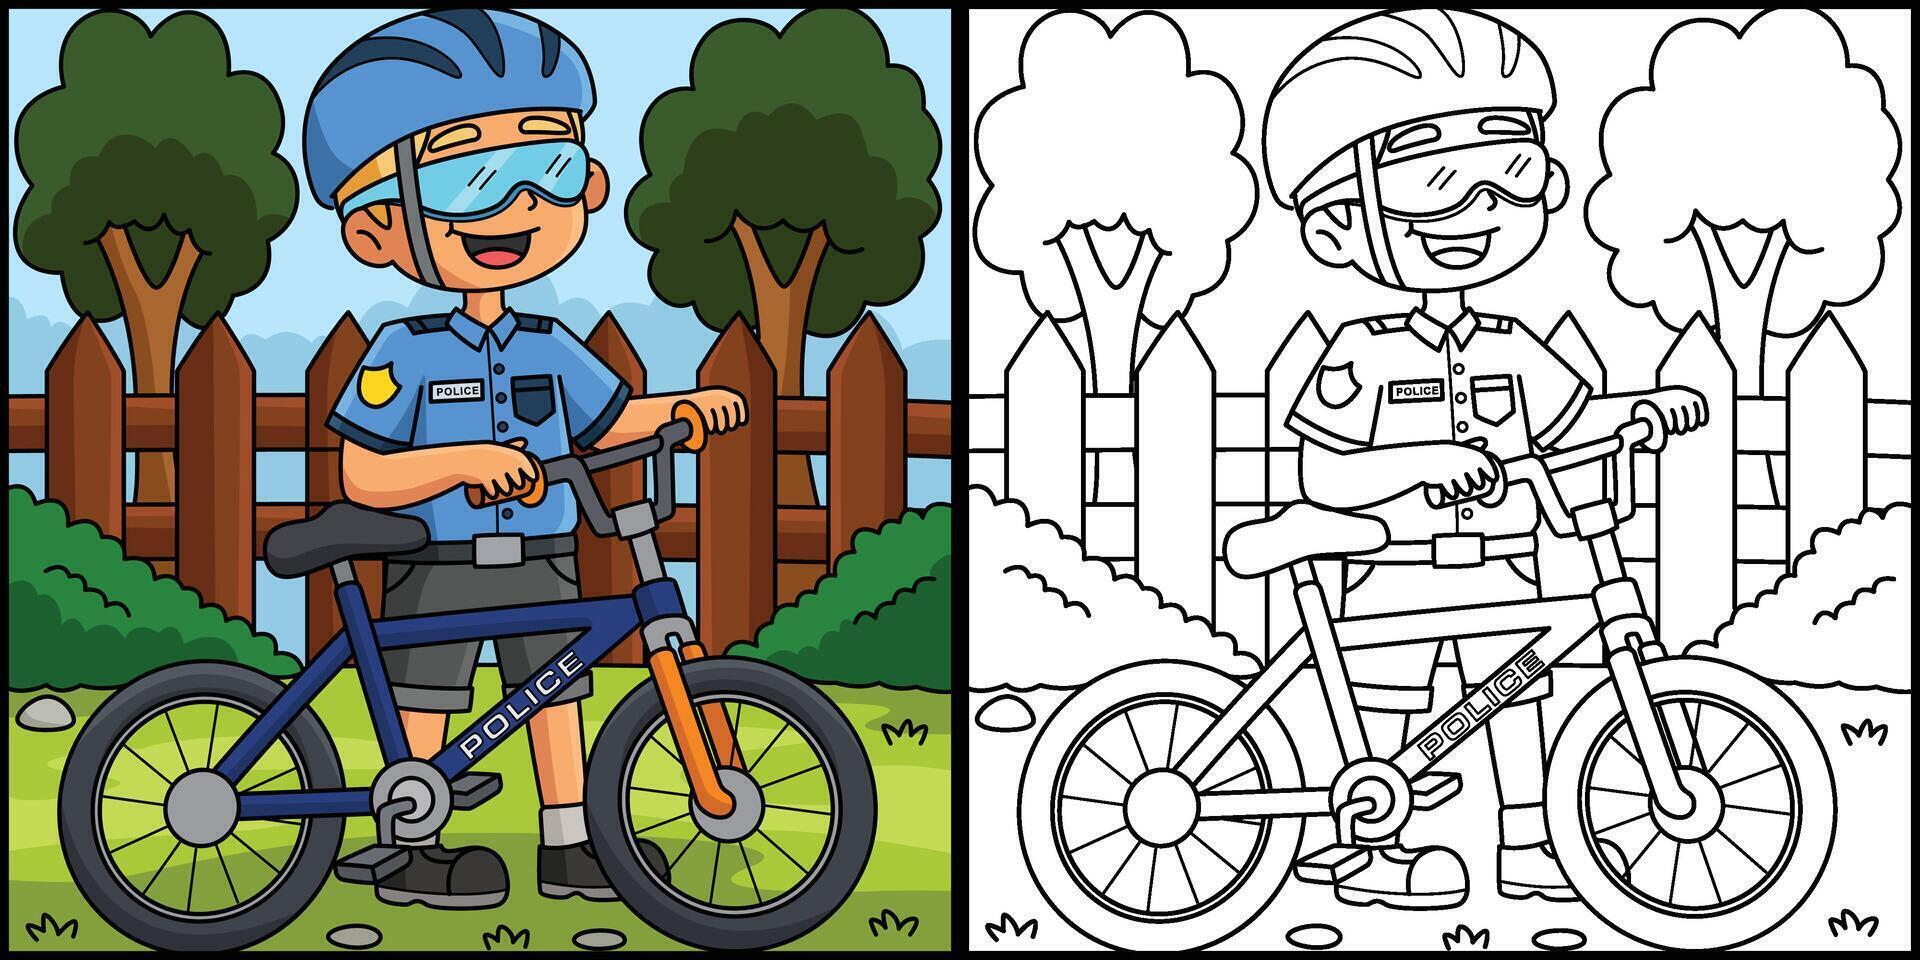 police officier avec une bicyclette coloration illustration vecteur